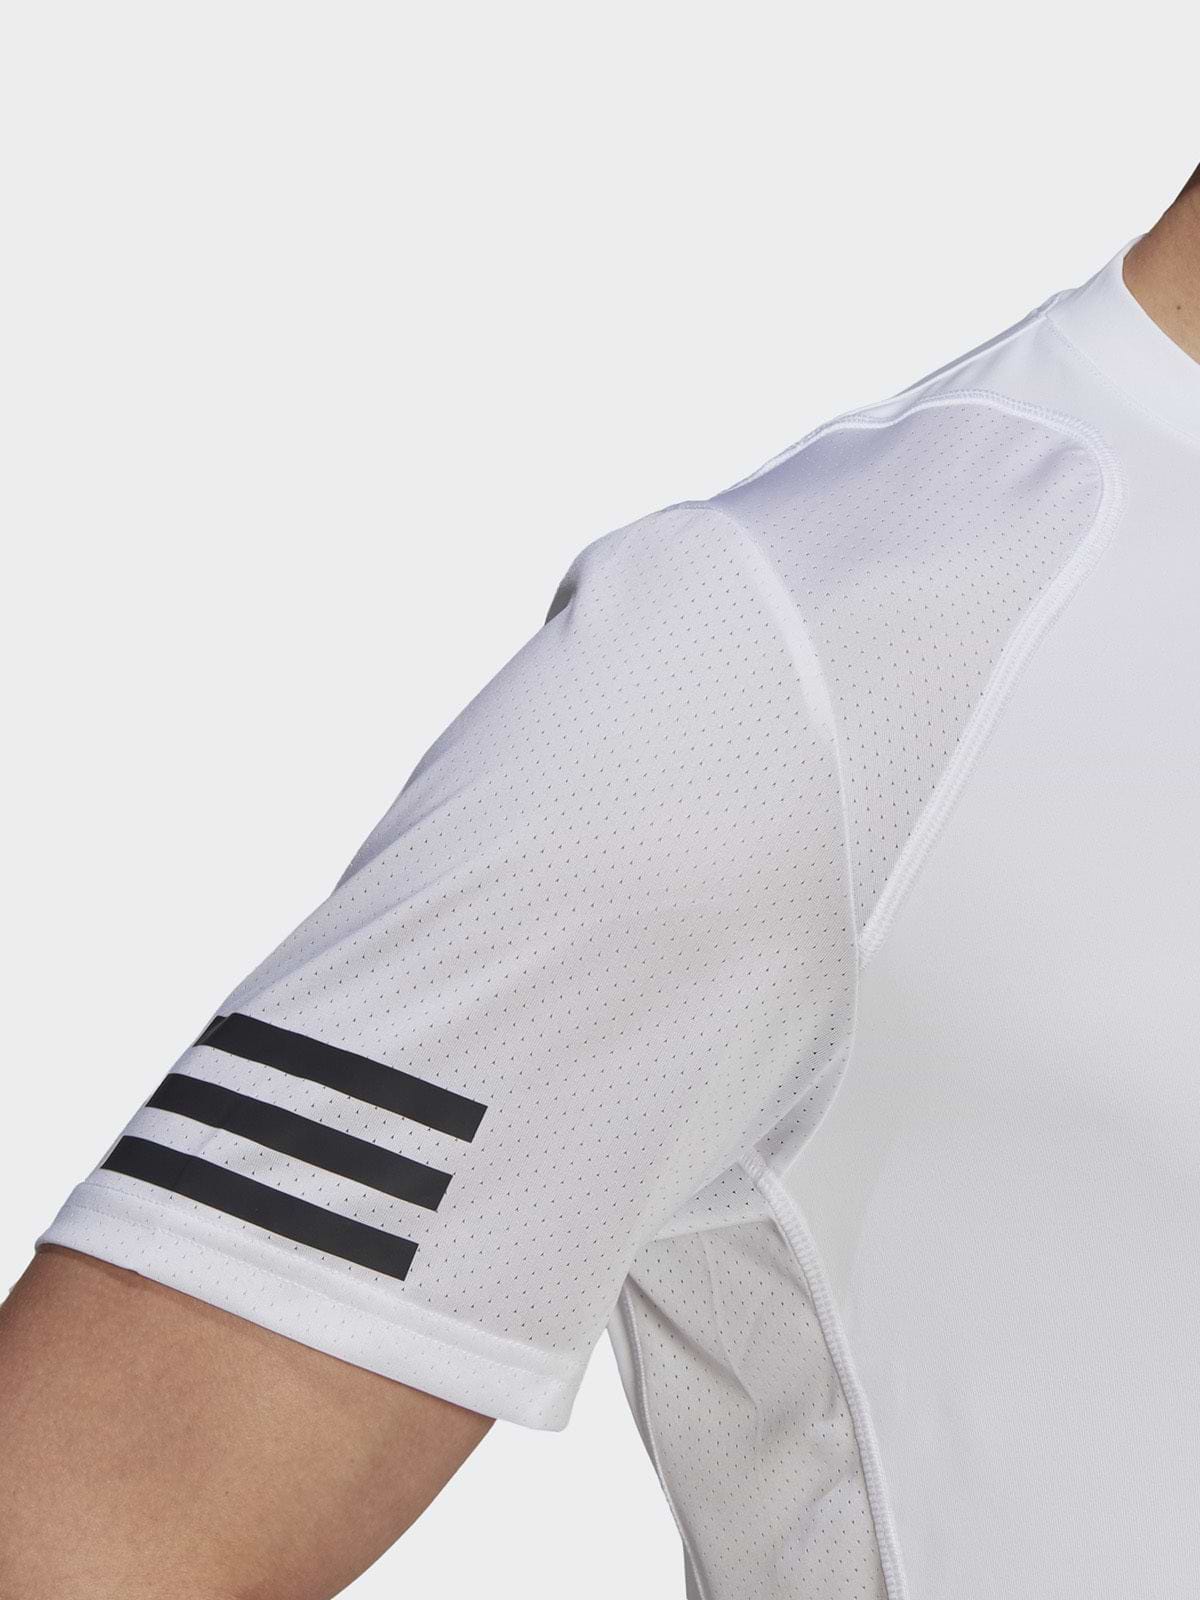 חולצת טניס קצרה עם דוגמת פסים- adidas performance|אדידס פרפורמנס